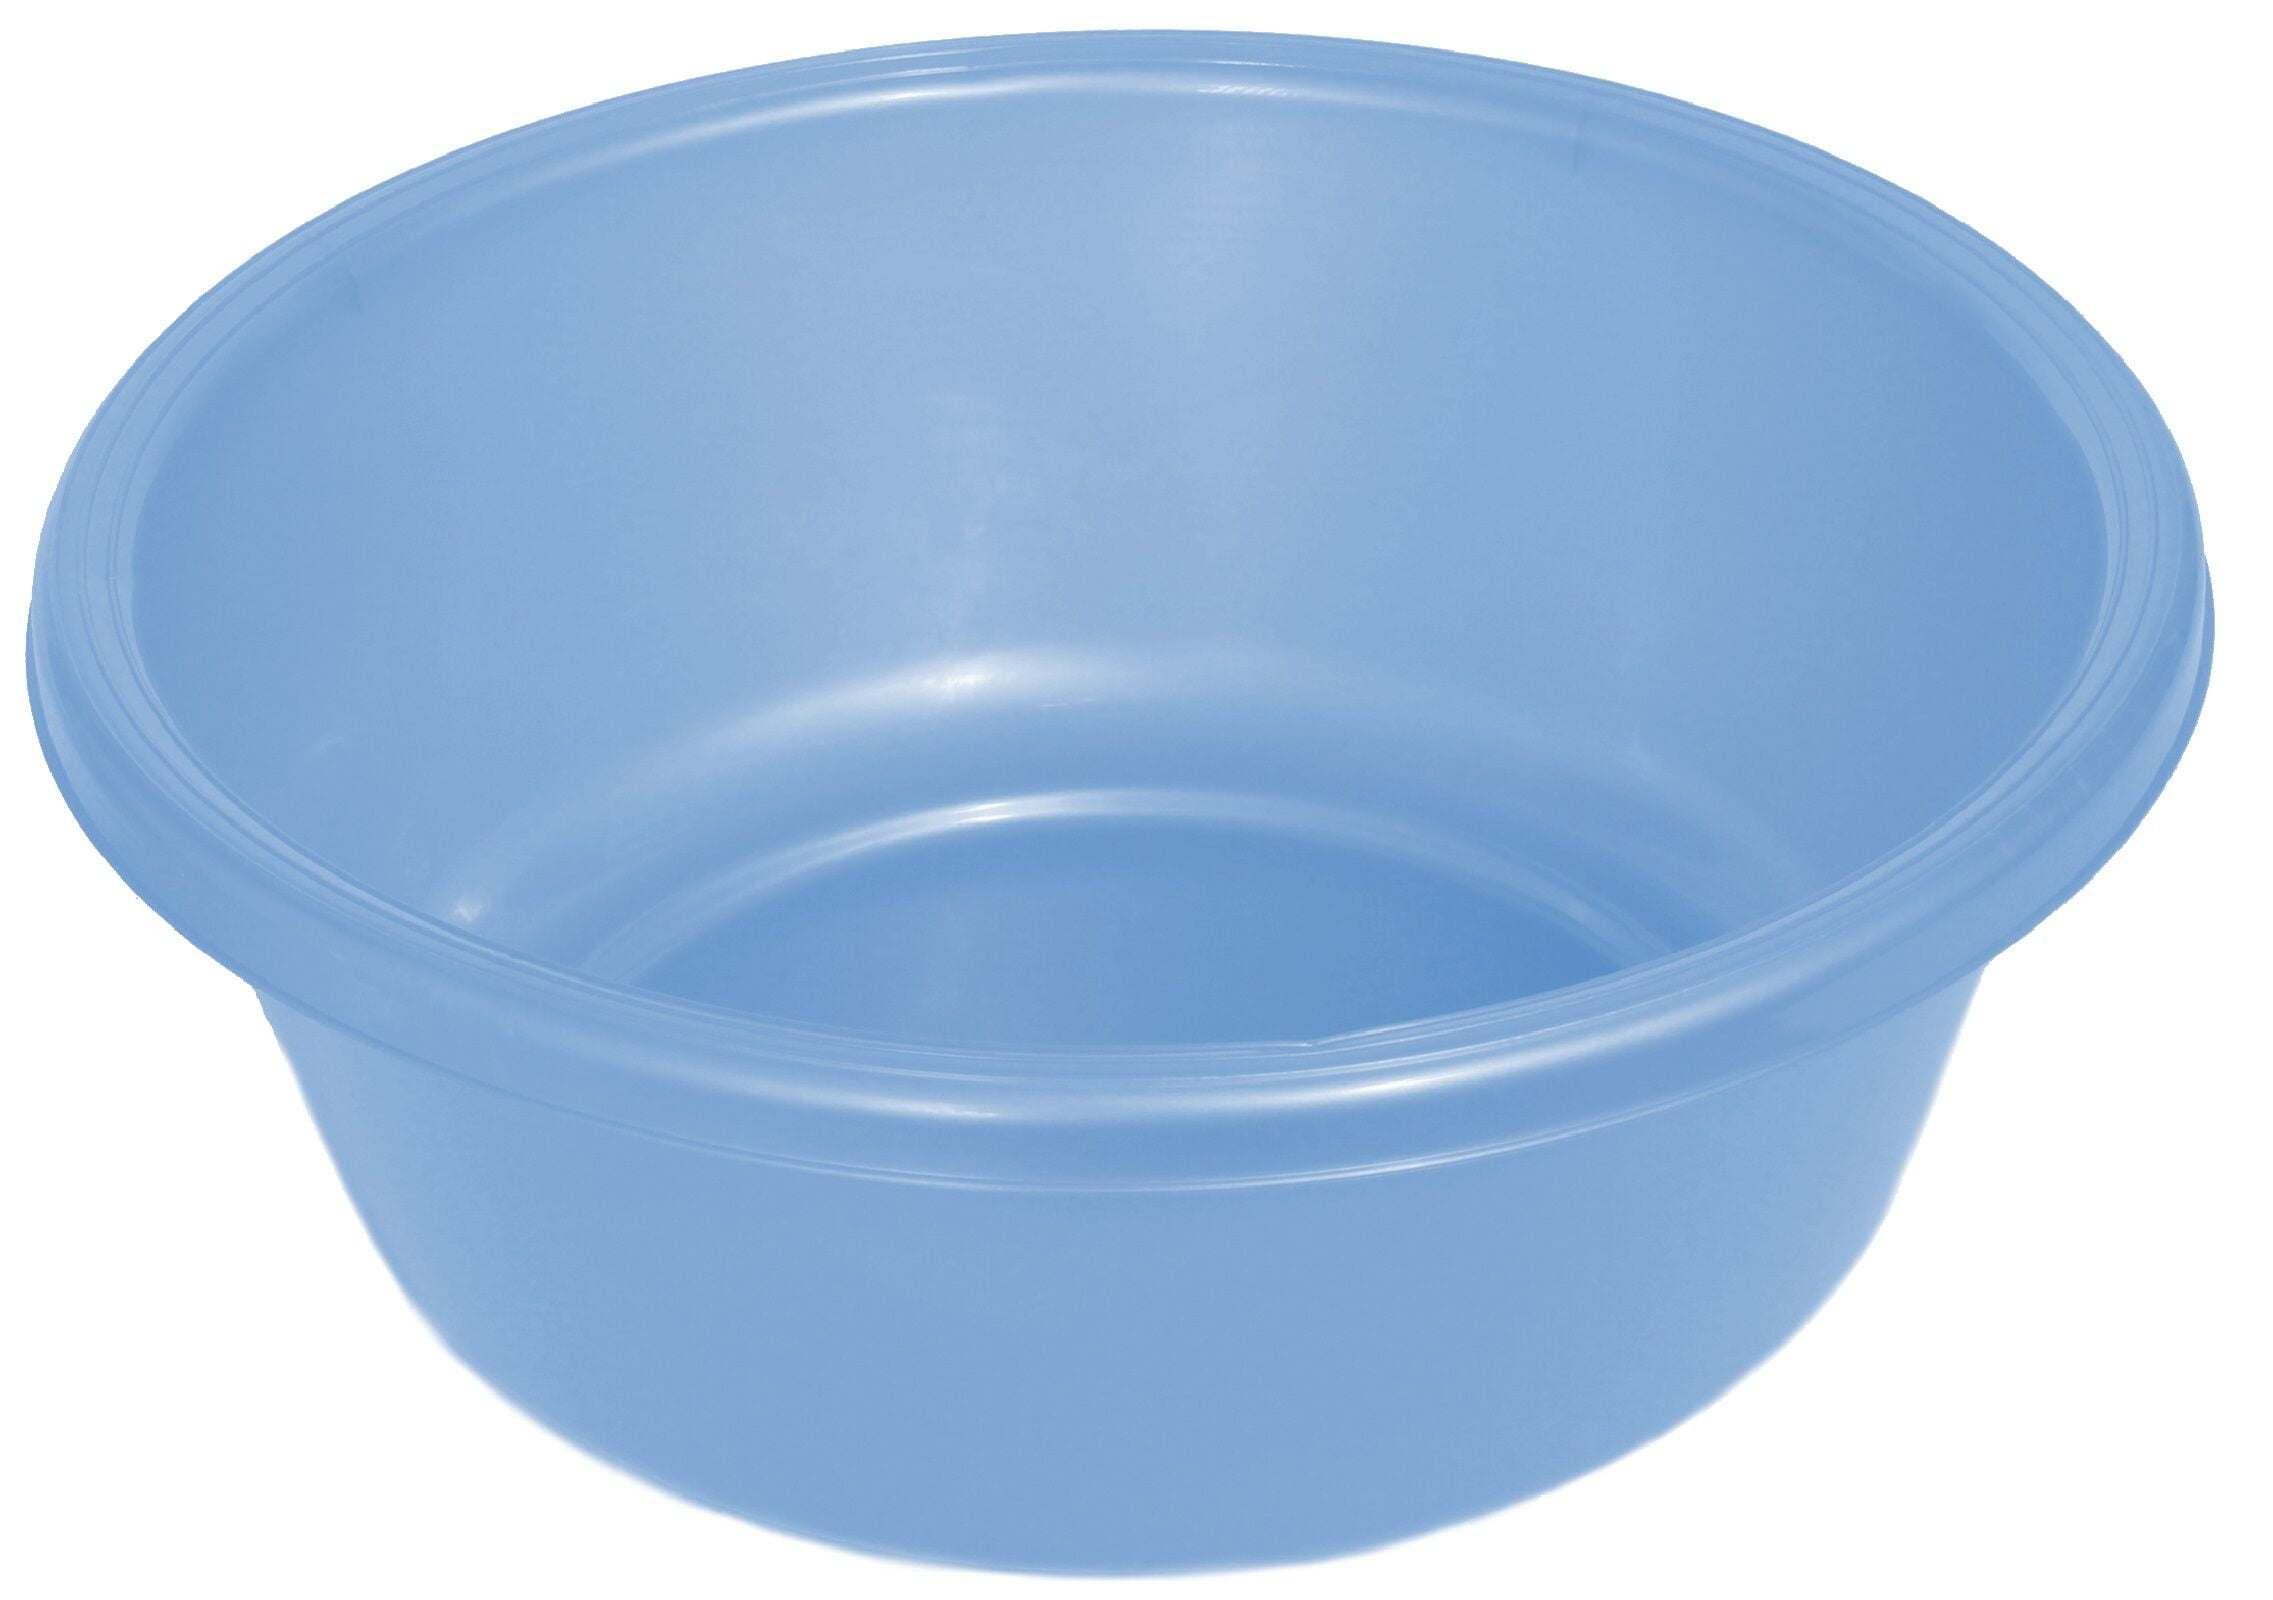 YBM Home Plastic Dish Pan Basin 5.75 in. H x 11 in. W x 13 in. L Ba430 (1,  Blue)